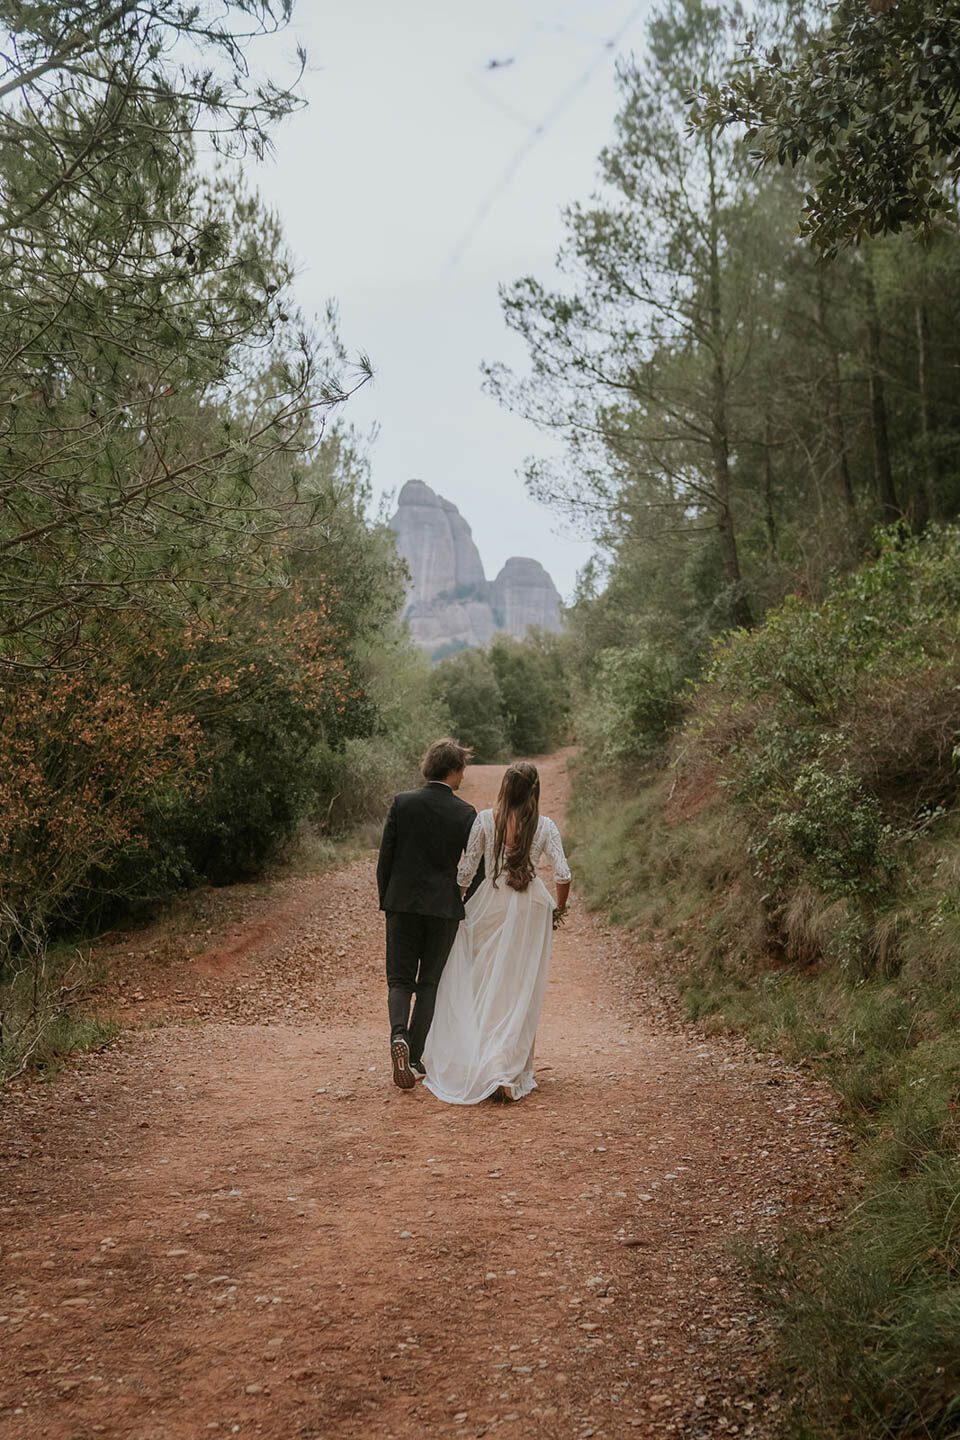 Brautpaar in Spanien von hinten fotografiert in Montsserrat zwischen Bäumen